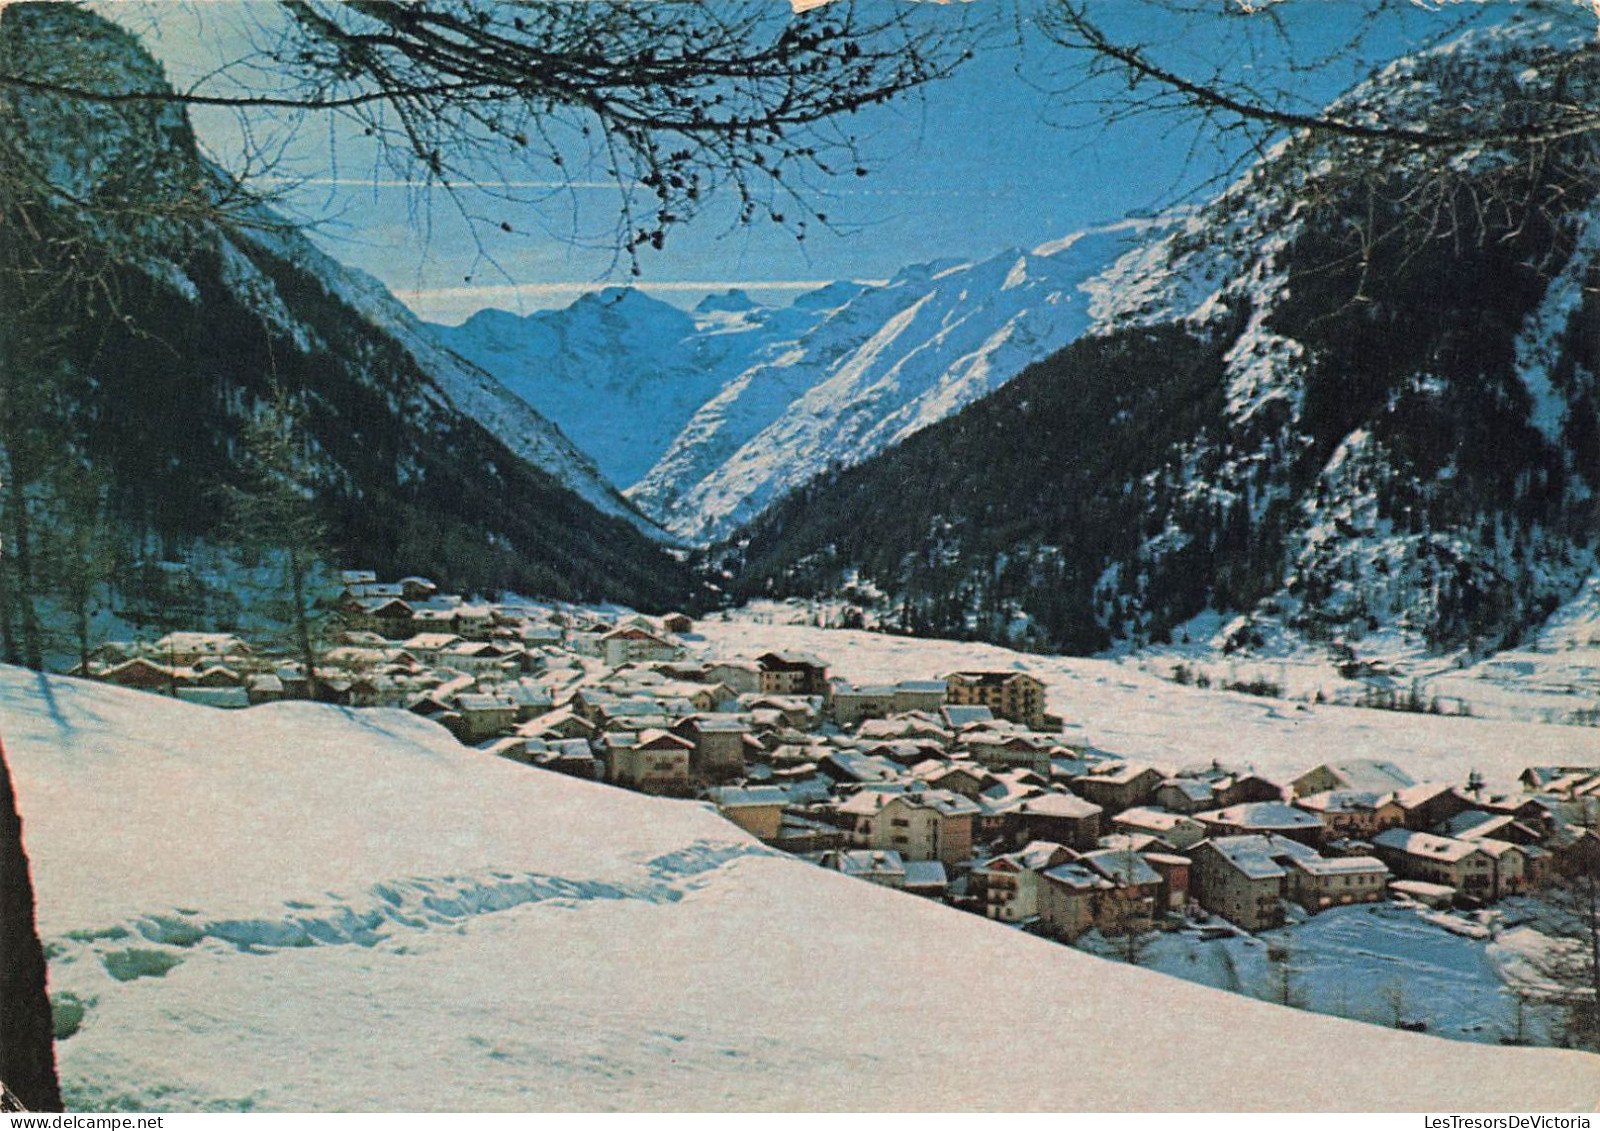 ITALIE - Cogne - Panorama Intervale - Vue Générale En Hiver - Colorisé - Carte Postale - Aosta